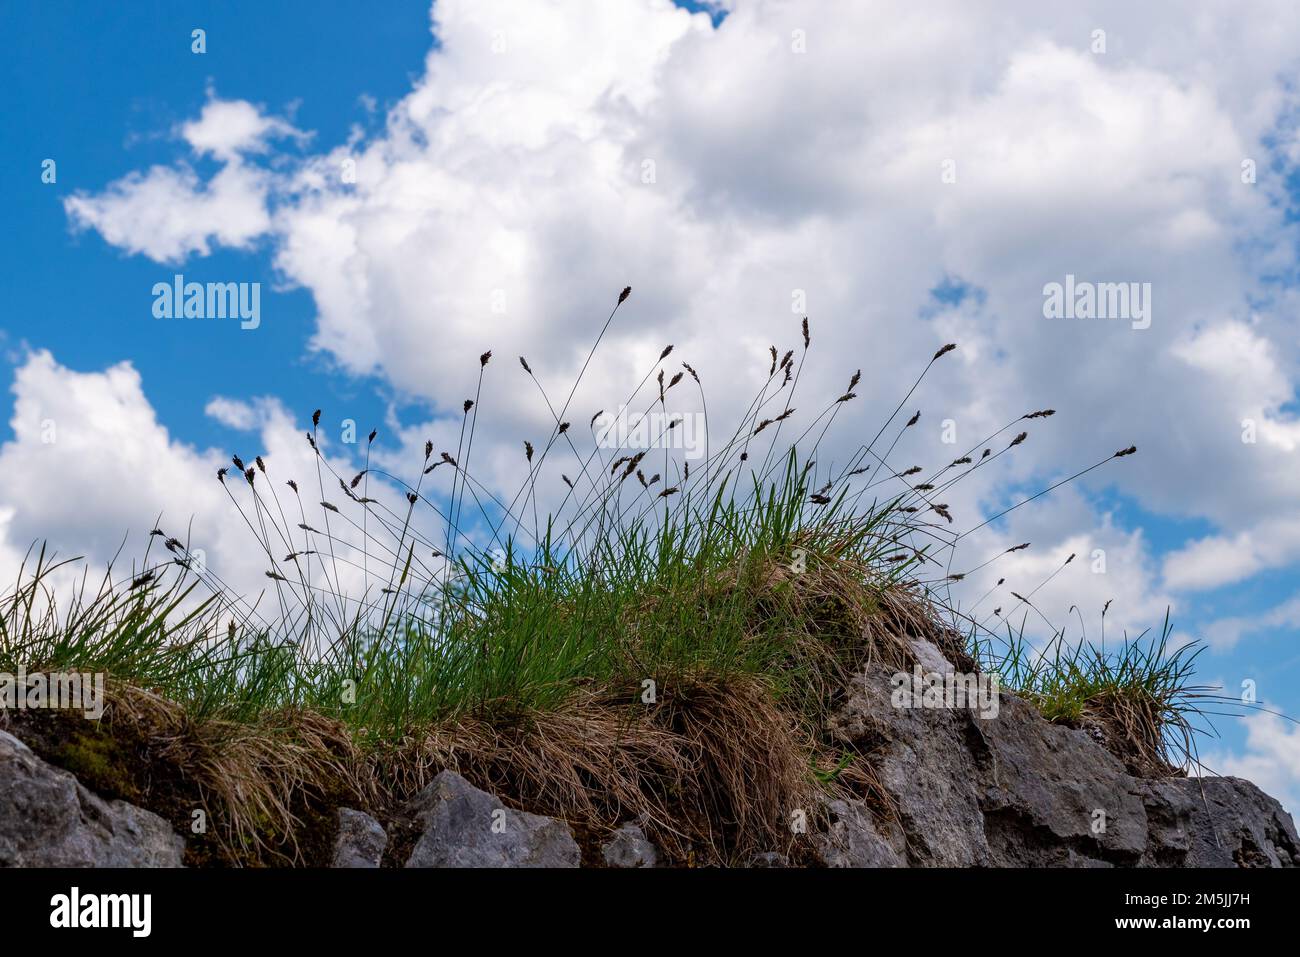 Herbes sur mur de pierre naturelle contre ciel bleu avec nuages blancs Banque D'Images